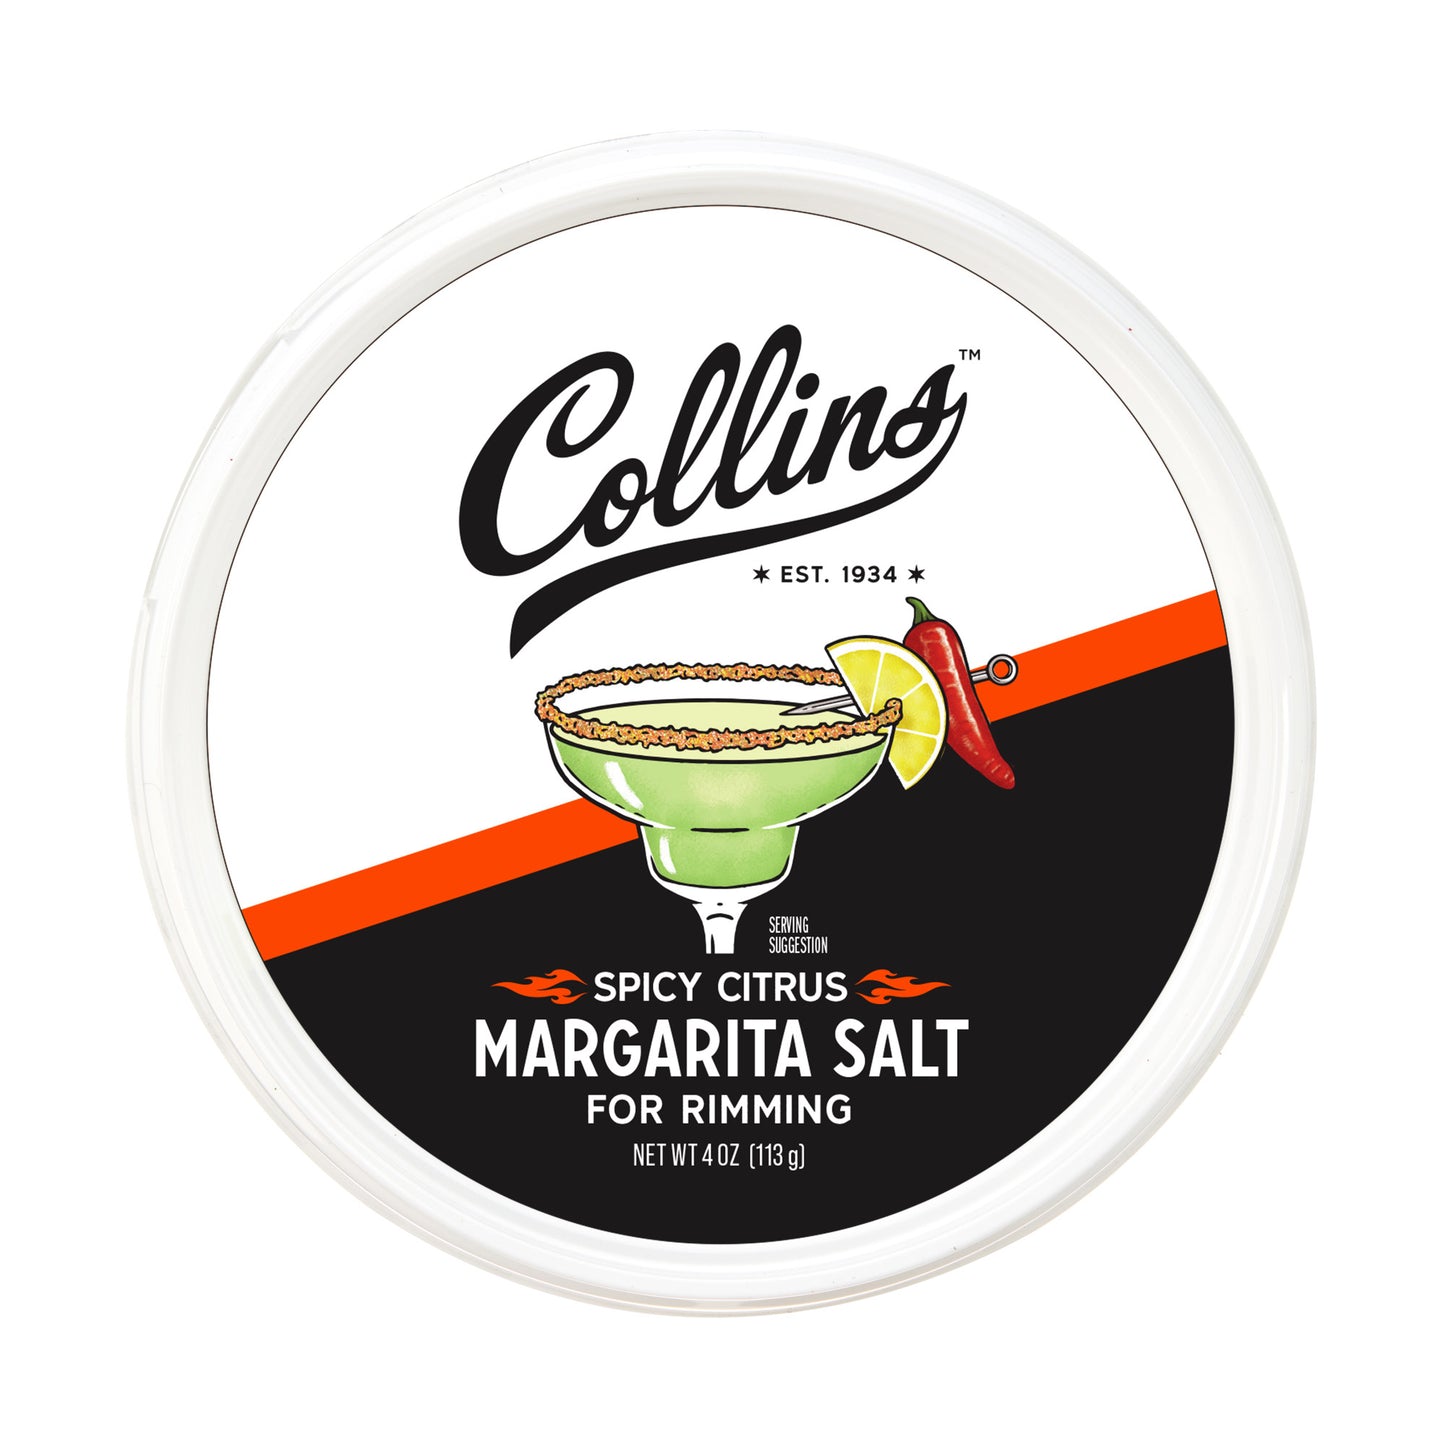 4oz. Spicy Citrus Margarita Salt